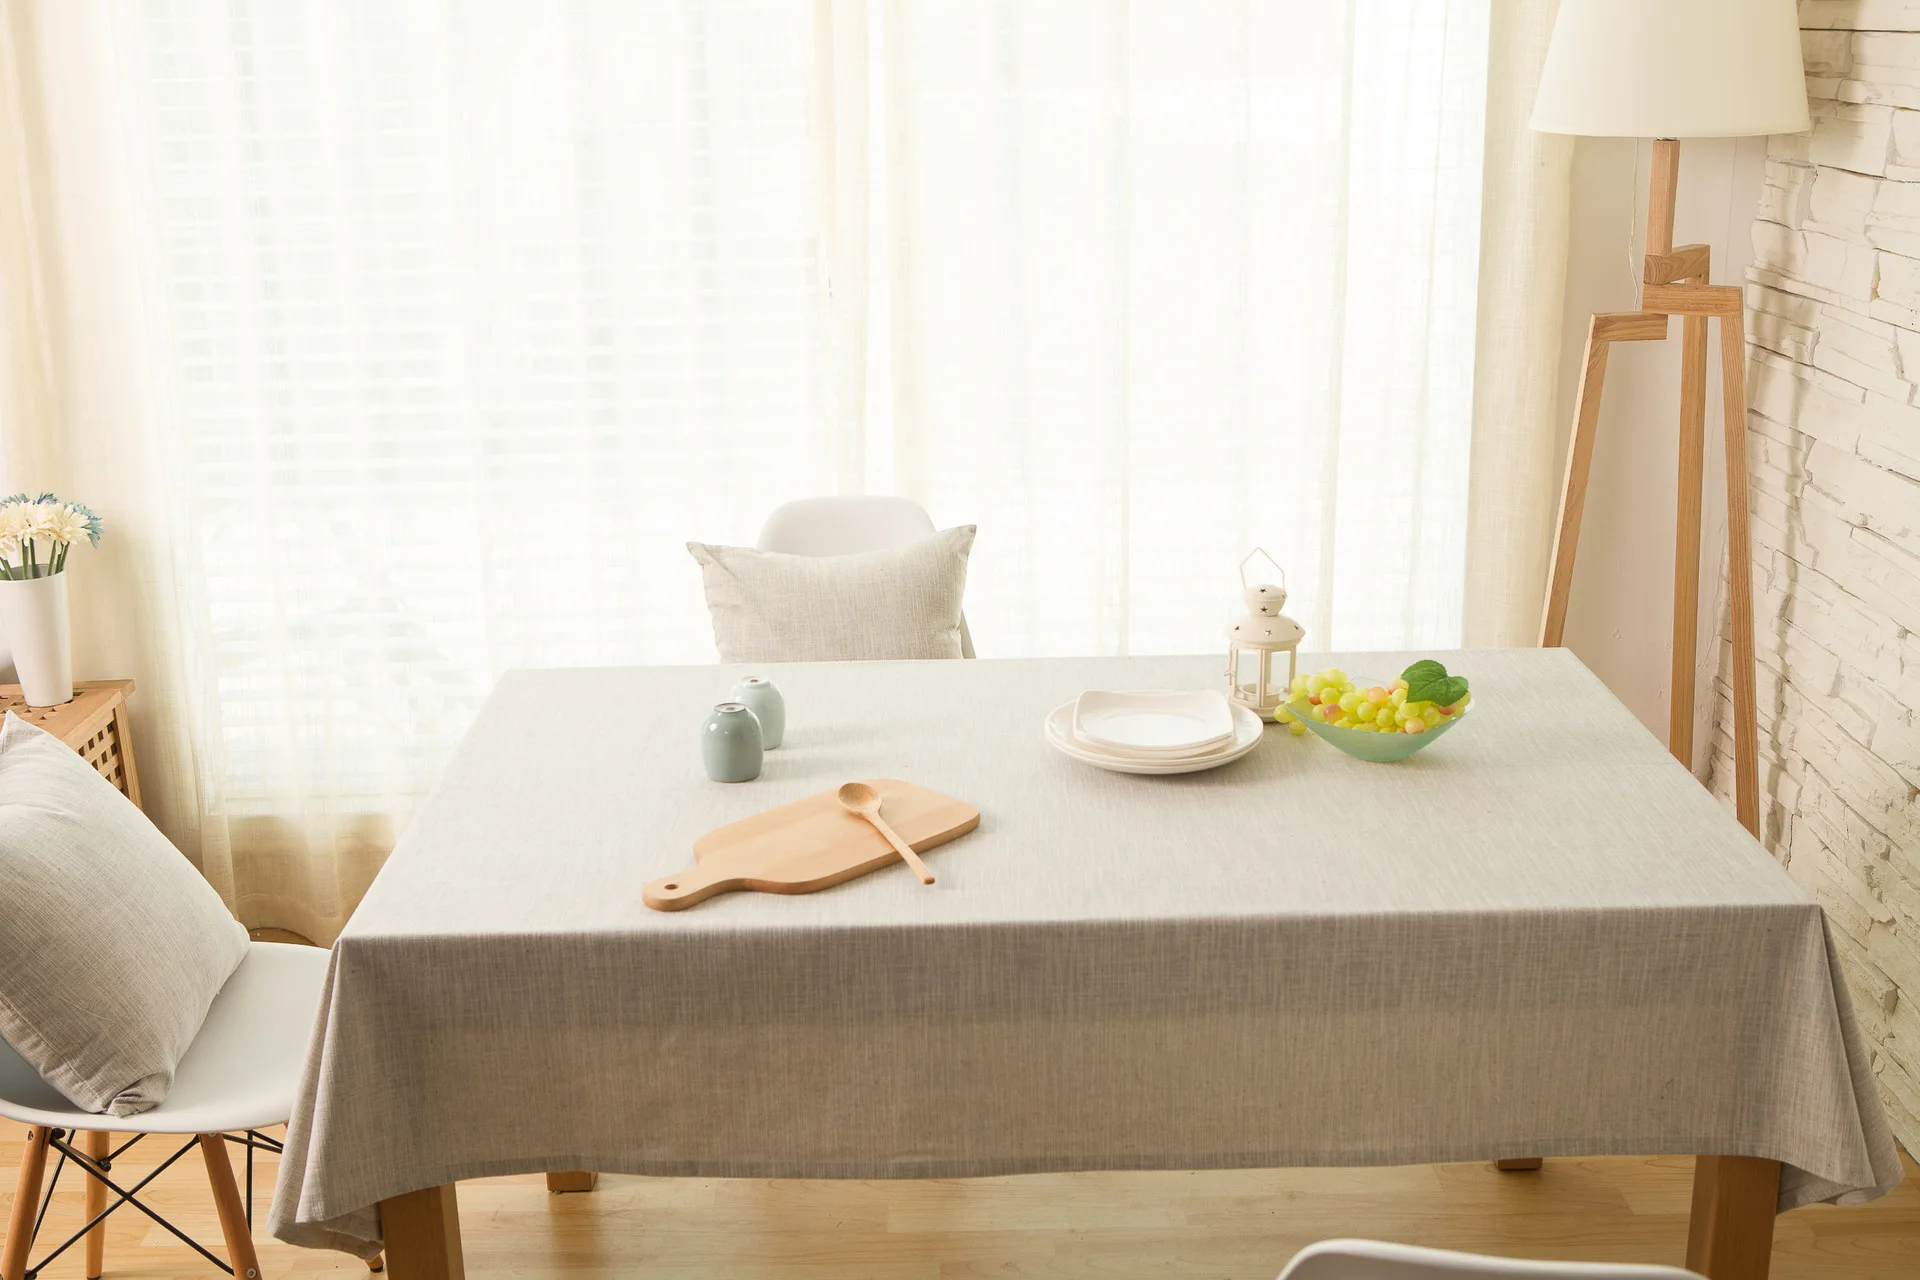 WINLIFE Простой японский льняная скатерть многофункциональная декоративная крышка стола прямоугольная квадратная на заказ